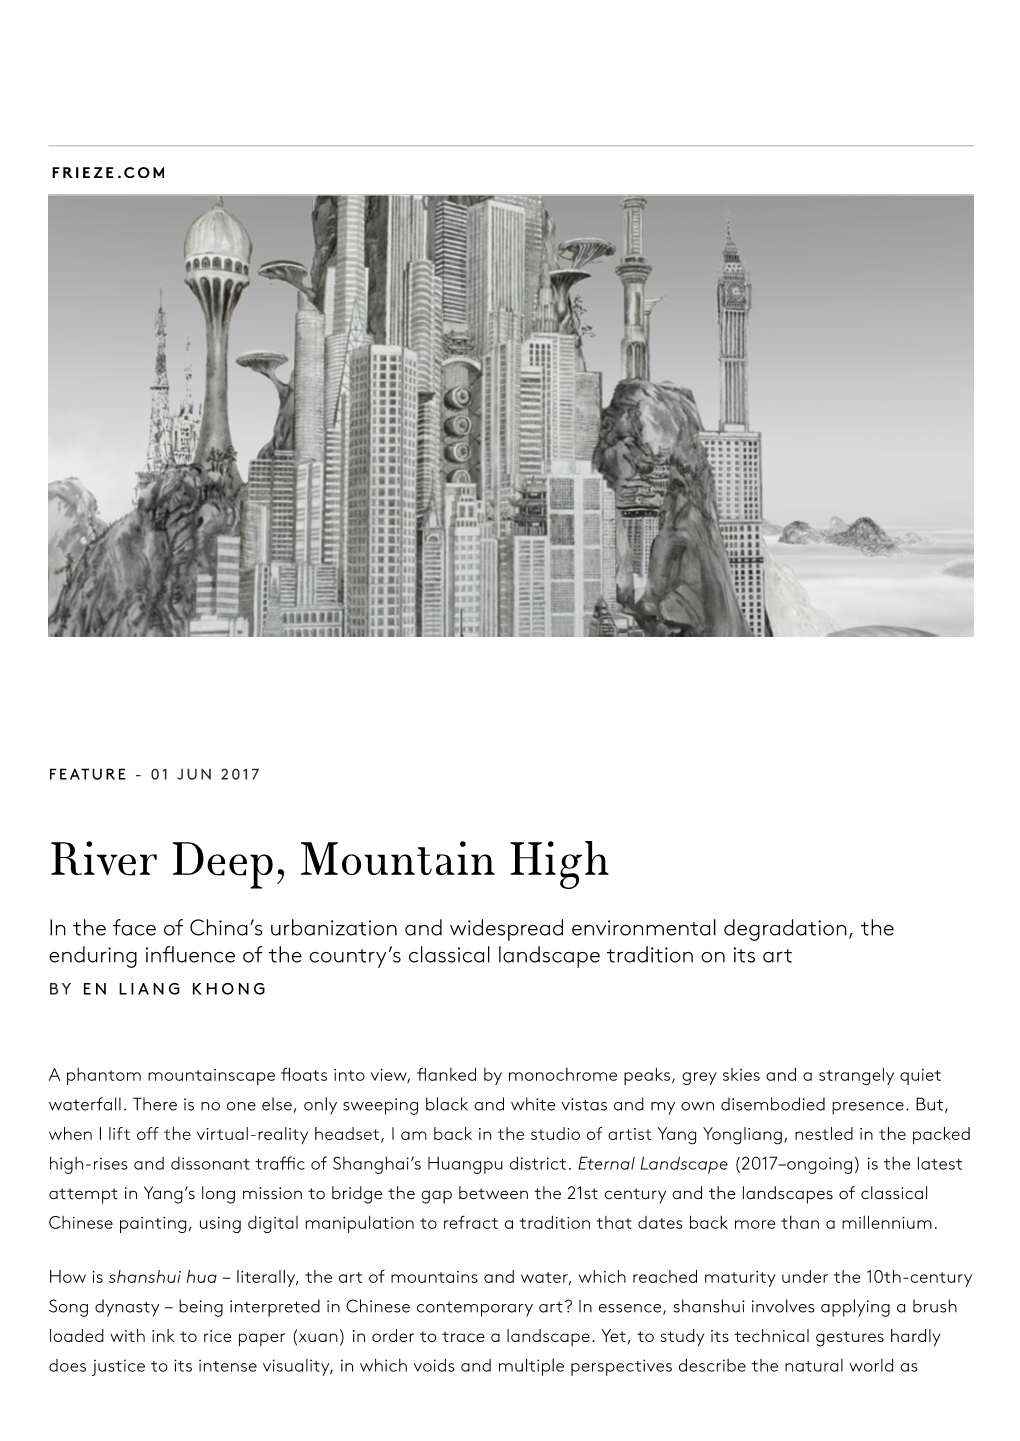 River Deep, Mountain High